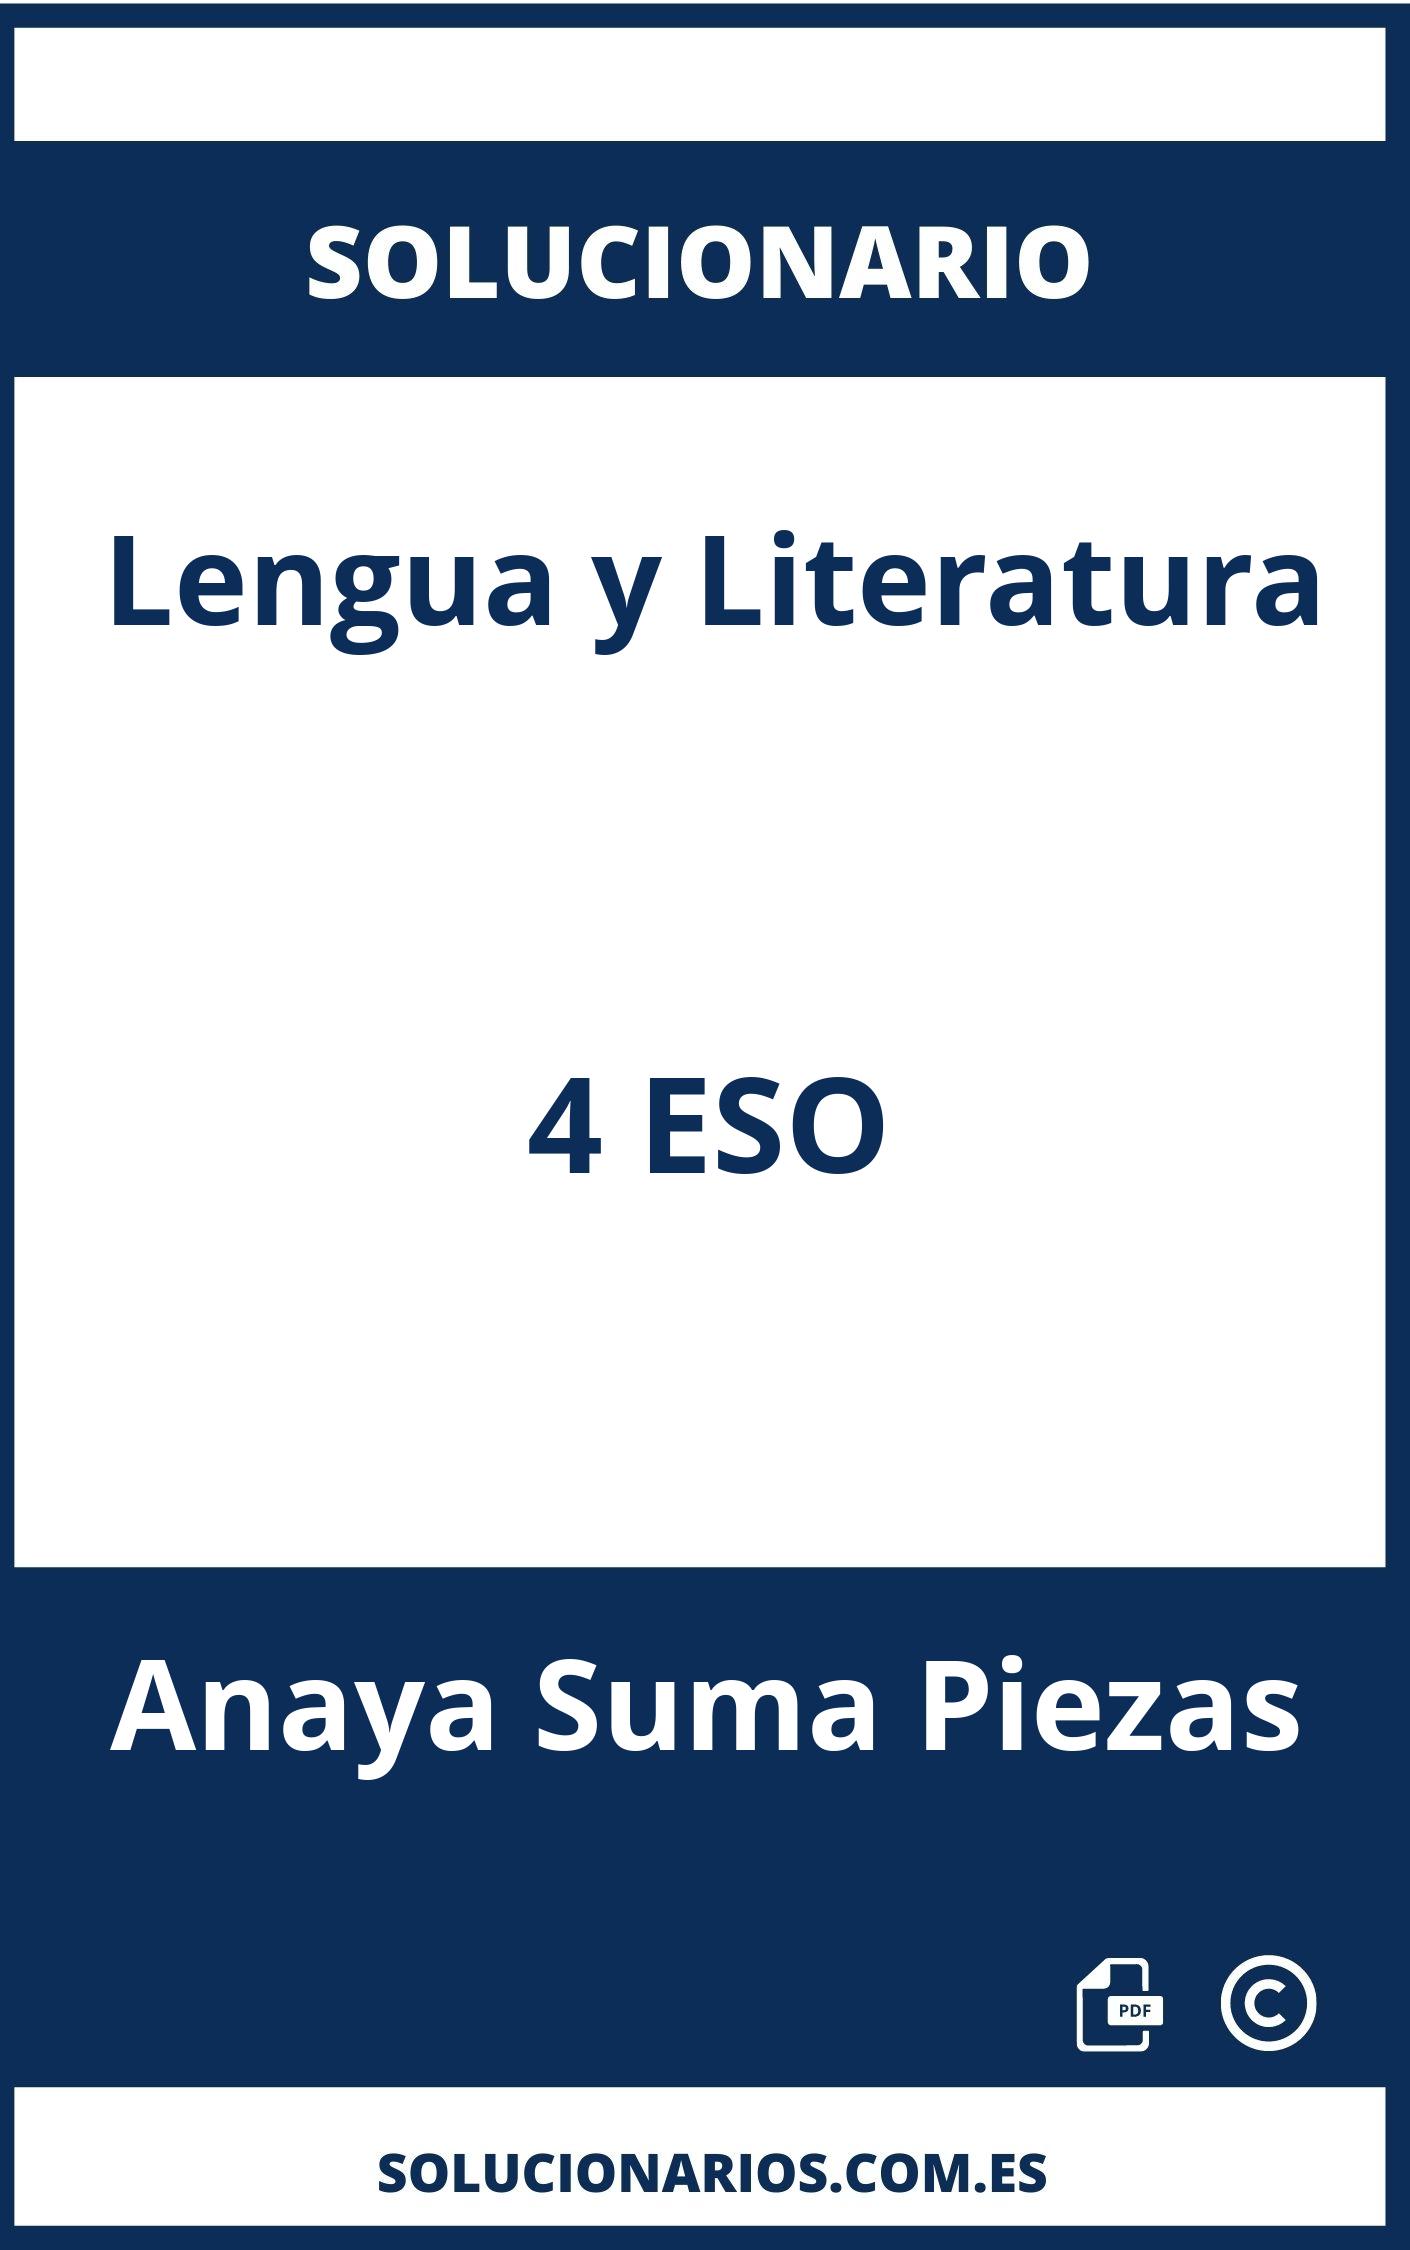 Solucionario Lengua y Literatura 4 ESO Anaya Suma Piezas